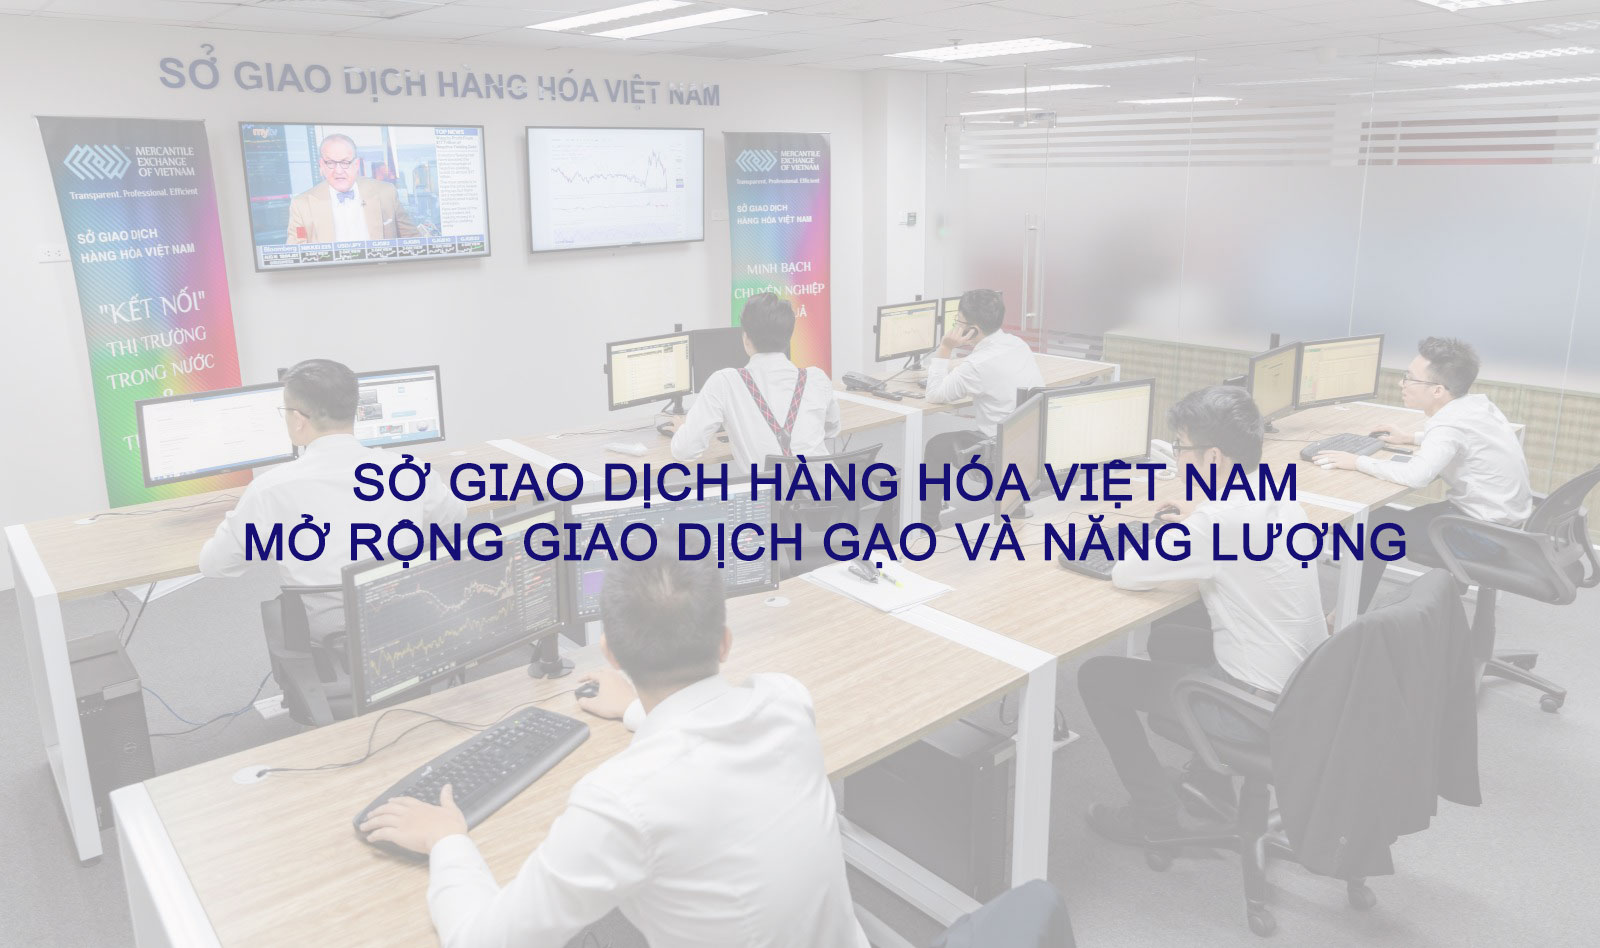 Sở giao dịch hàng hóa Việt Nam